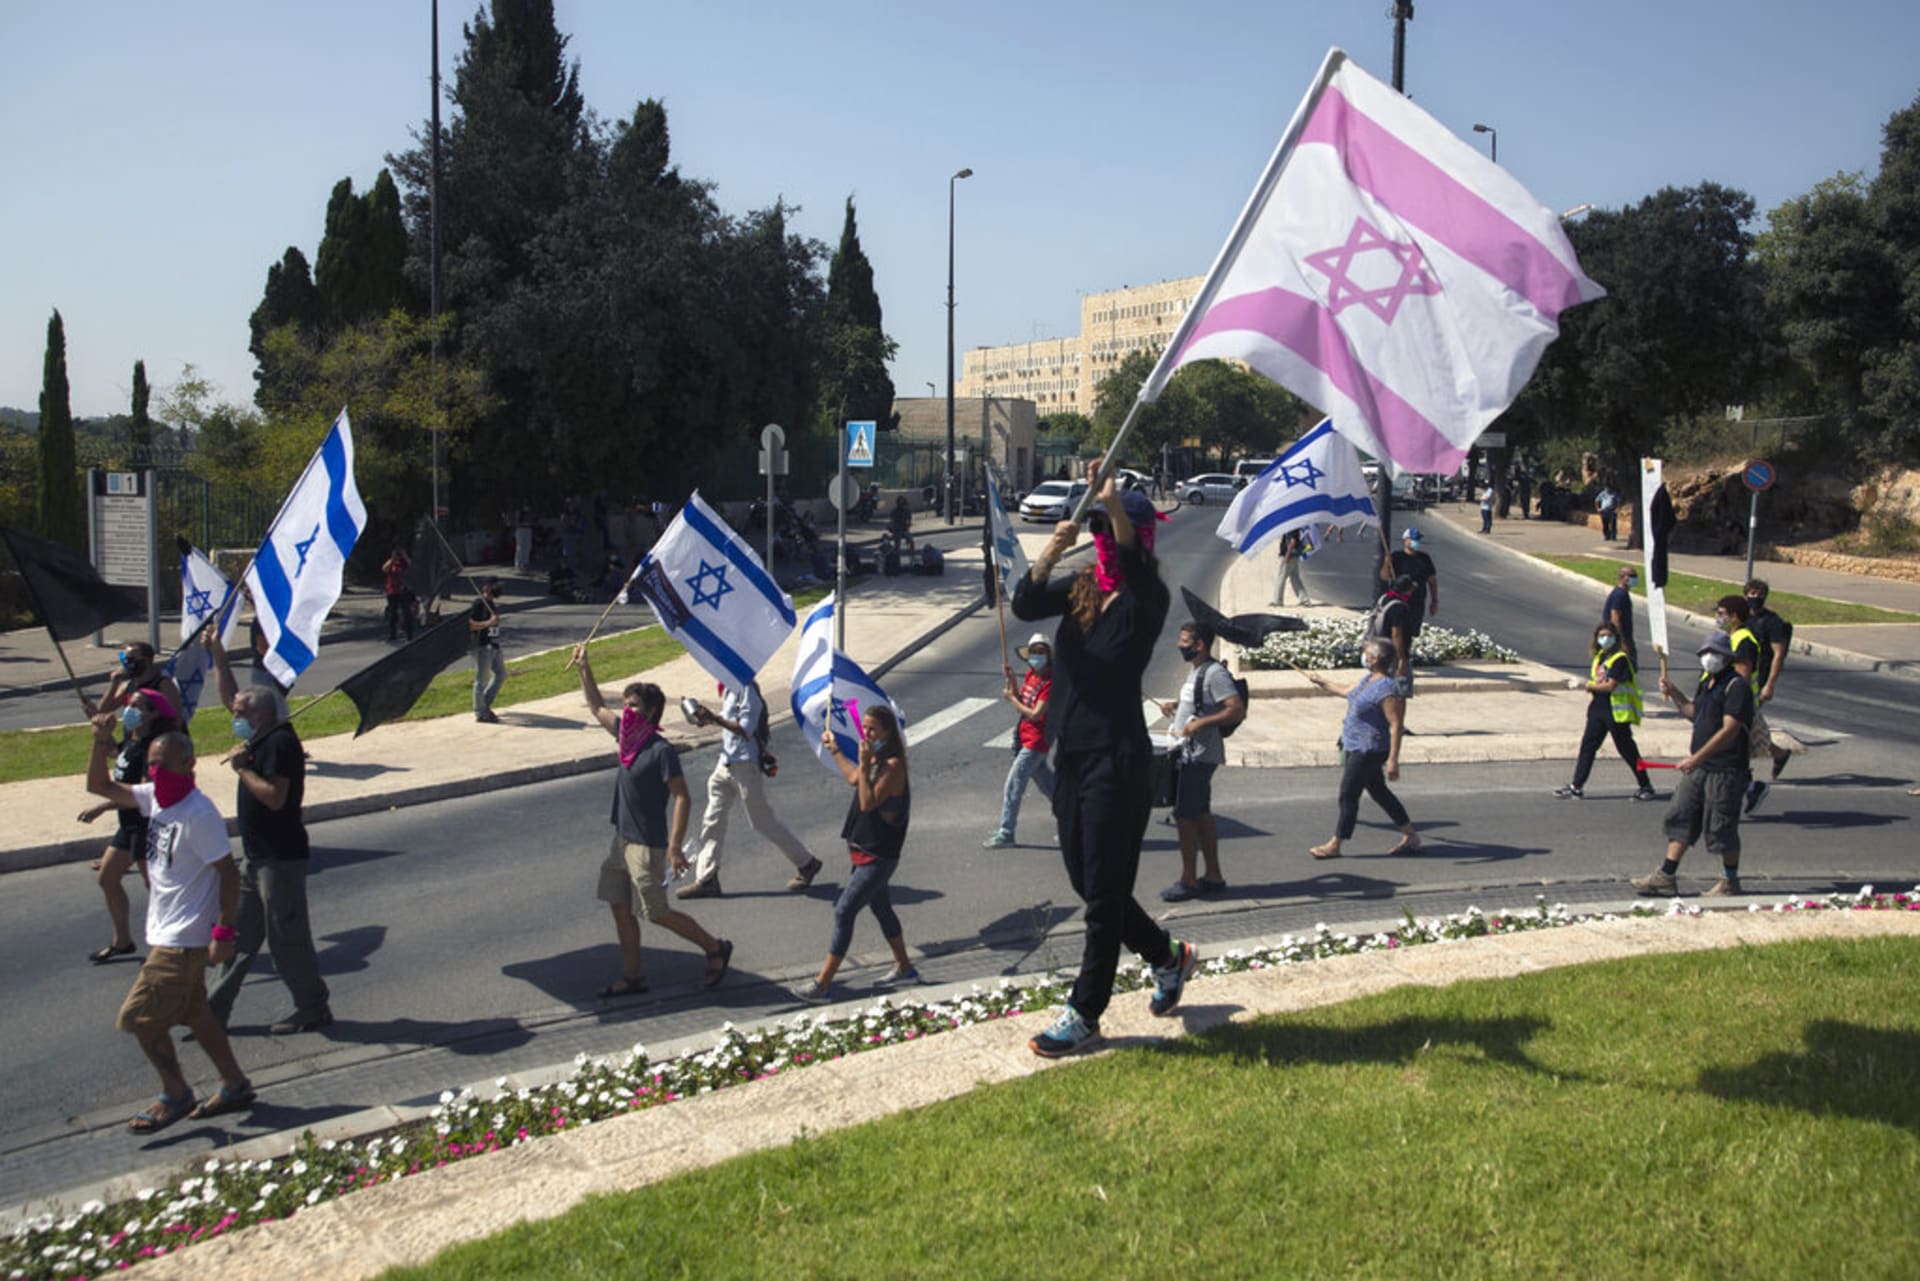 Protesty proti restrikcím v Izraeli